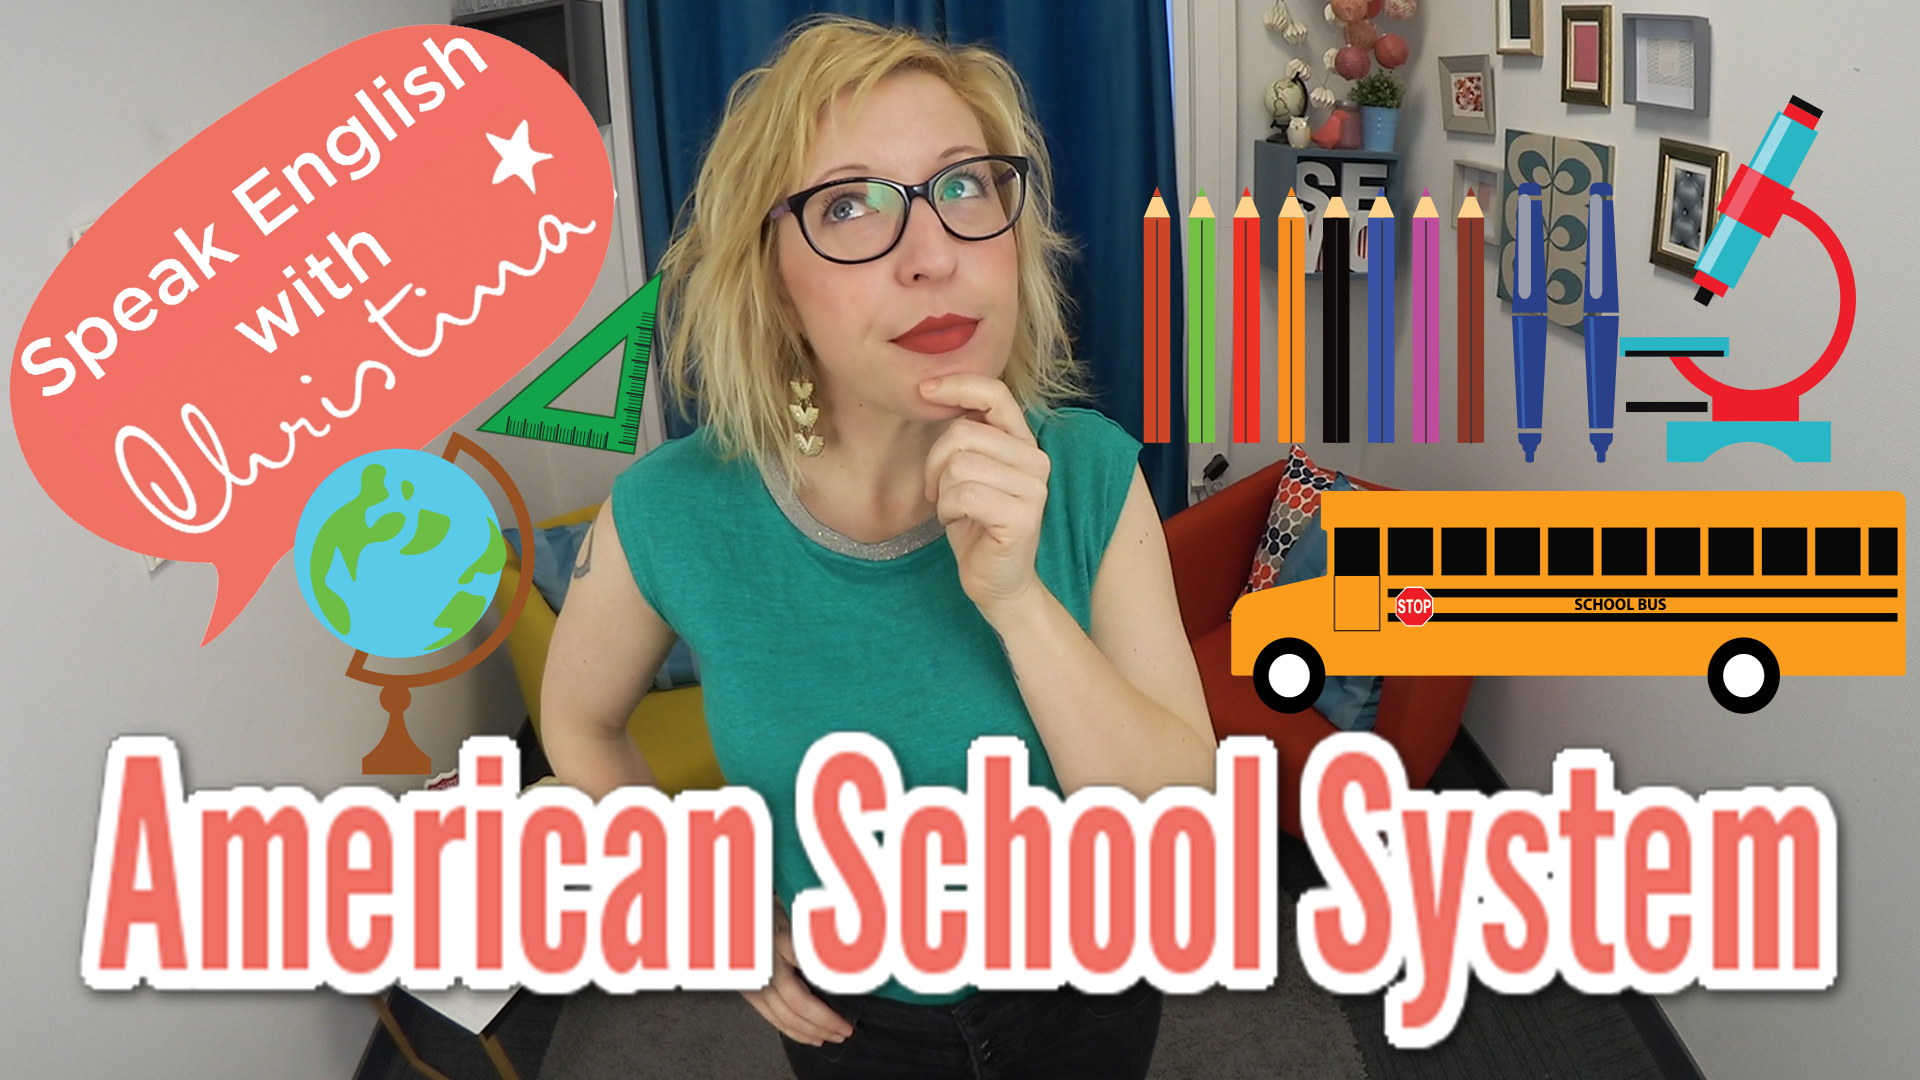 American school system